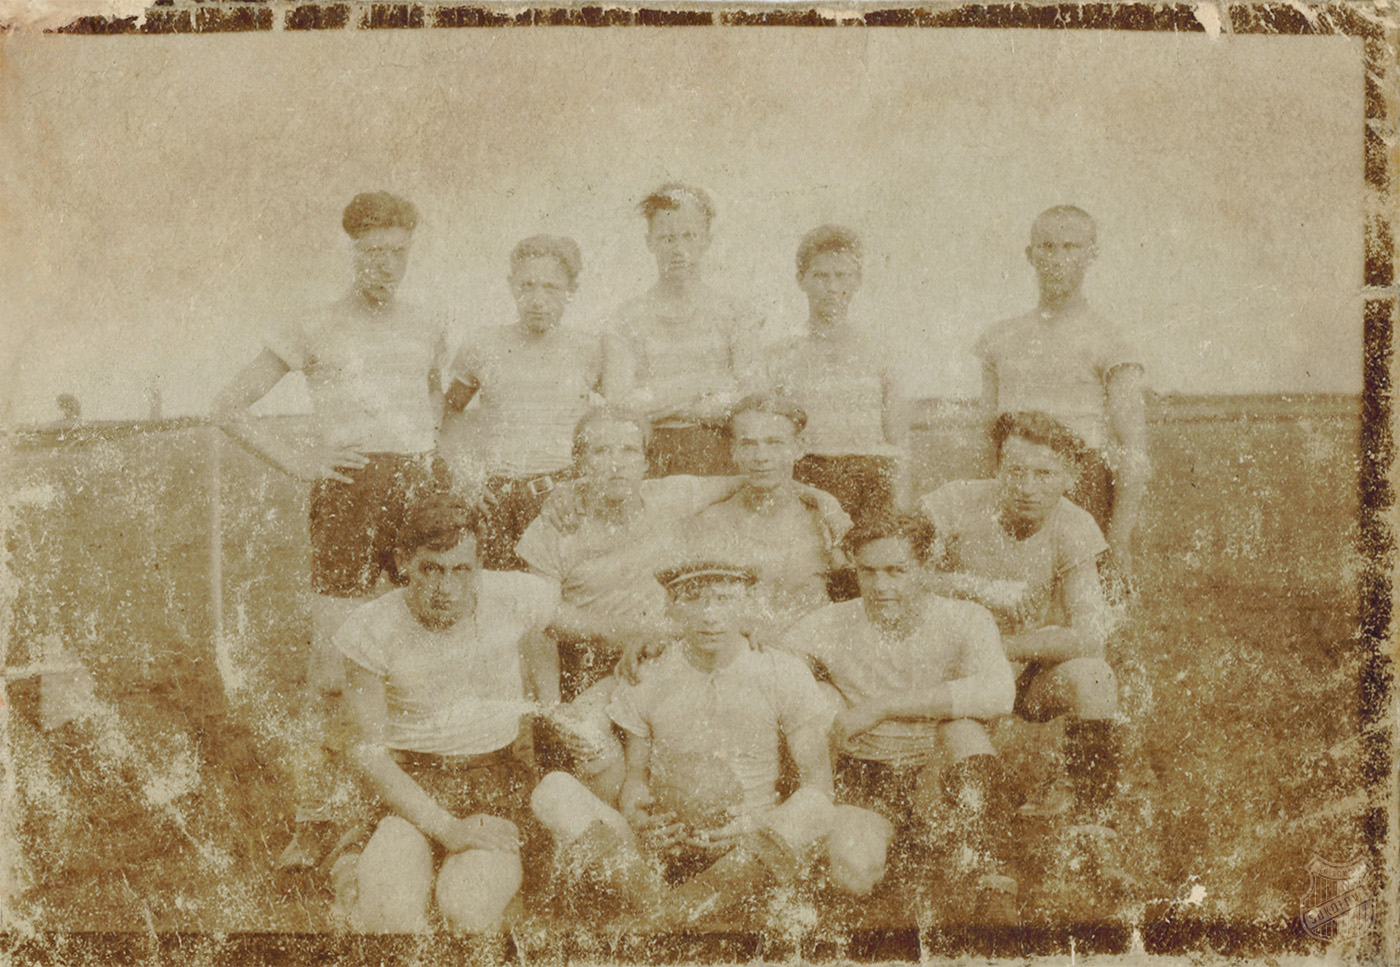 Przedwojenna drużyna piłkarska TG Sokół Sokołów Małopolski (1923 rok)